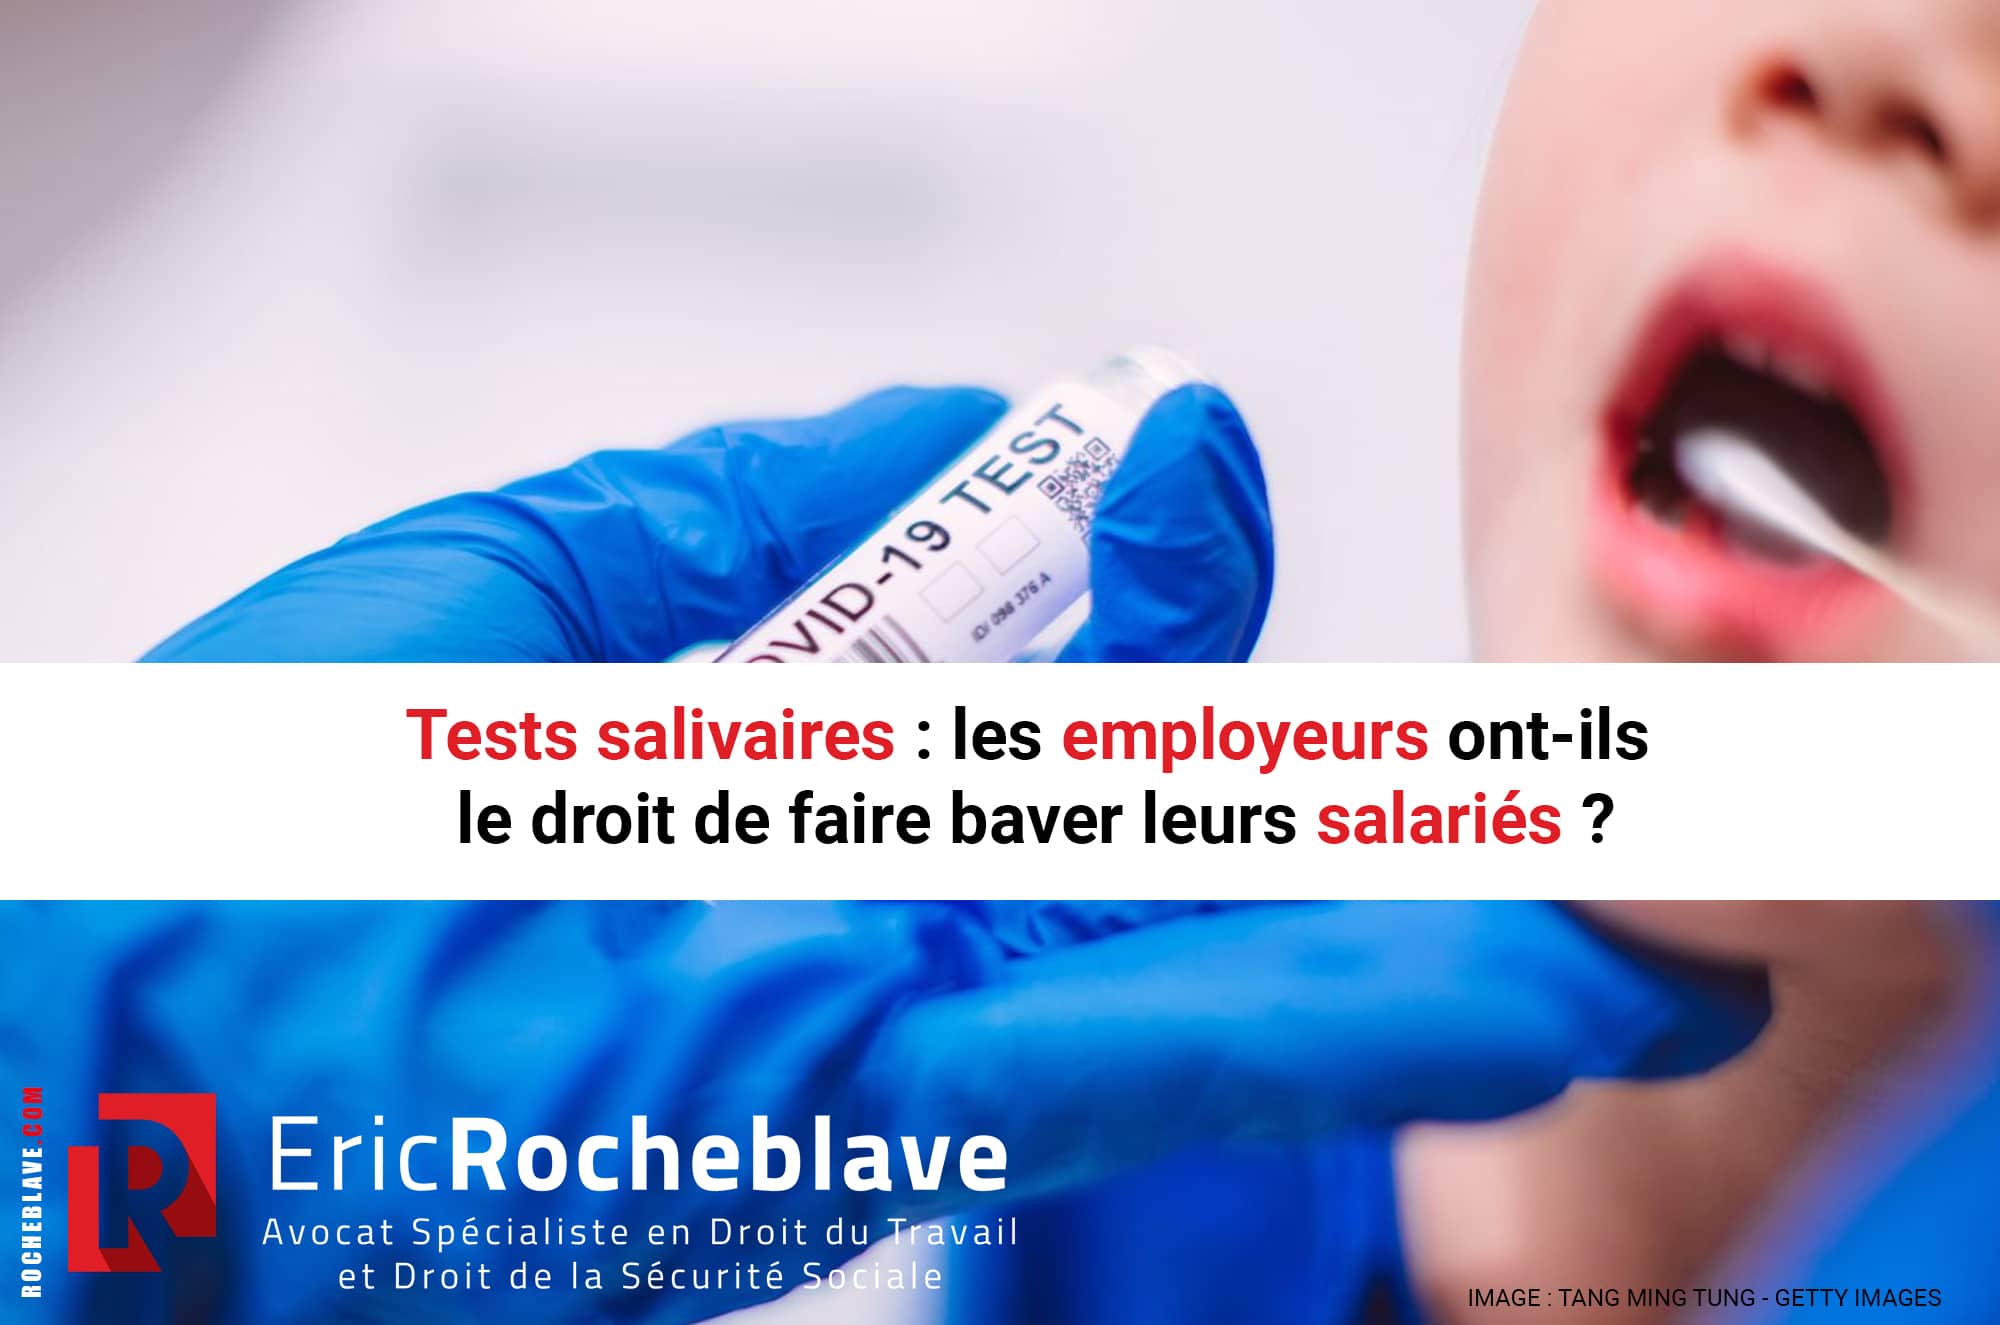 Tests salivaires : les employeurs ont-ils le droit de faire baver leurs salariés ?